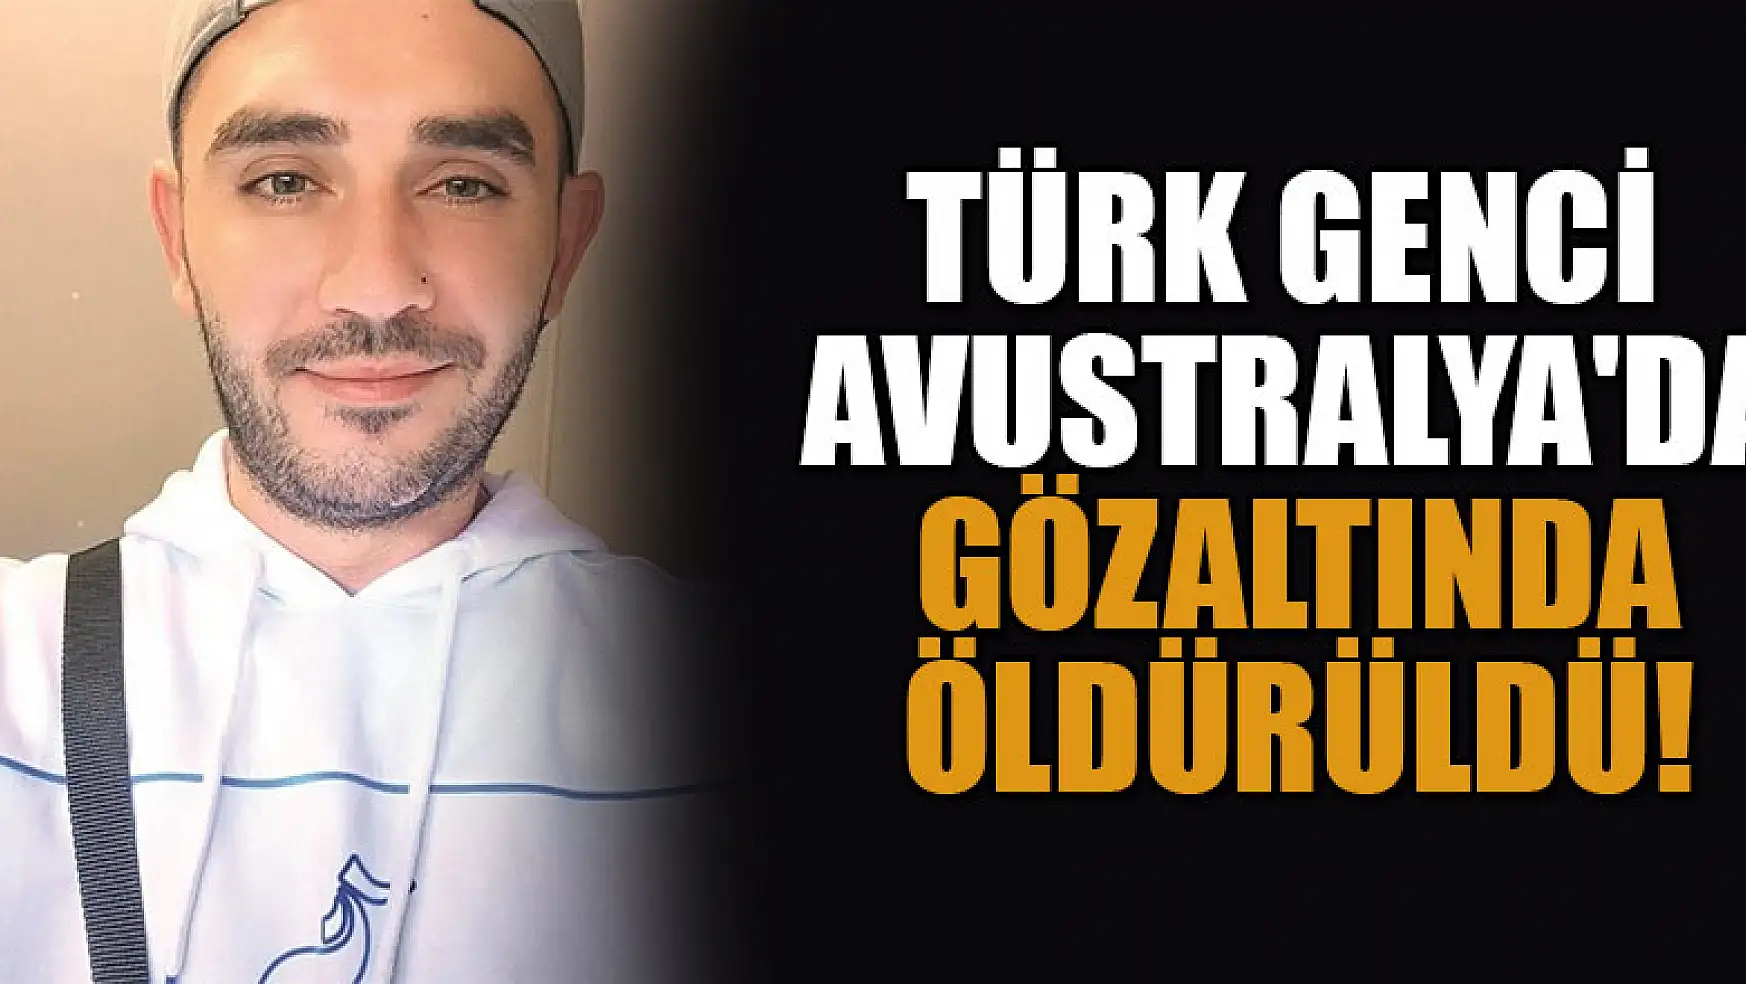 Türk genci Avustralya'da gözaltında öldürüldü!